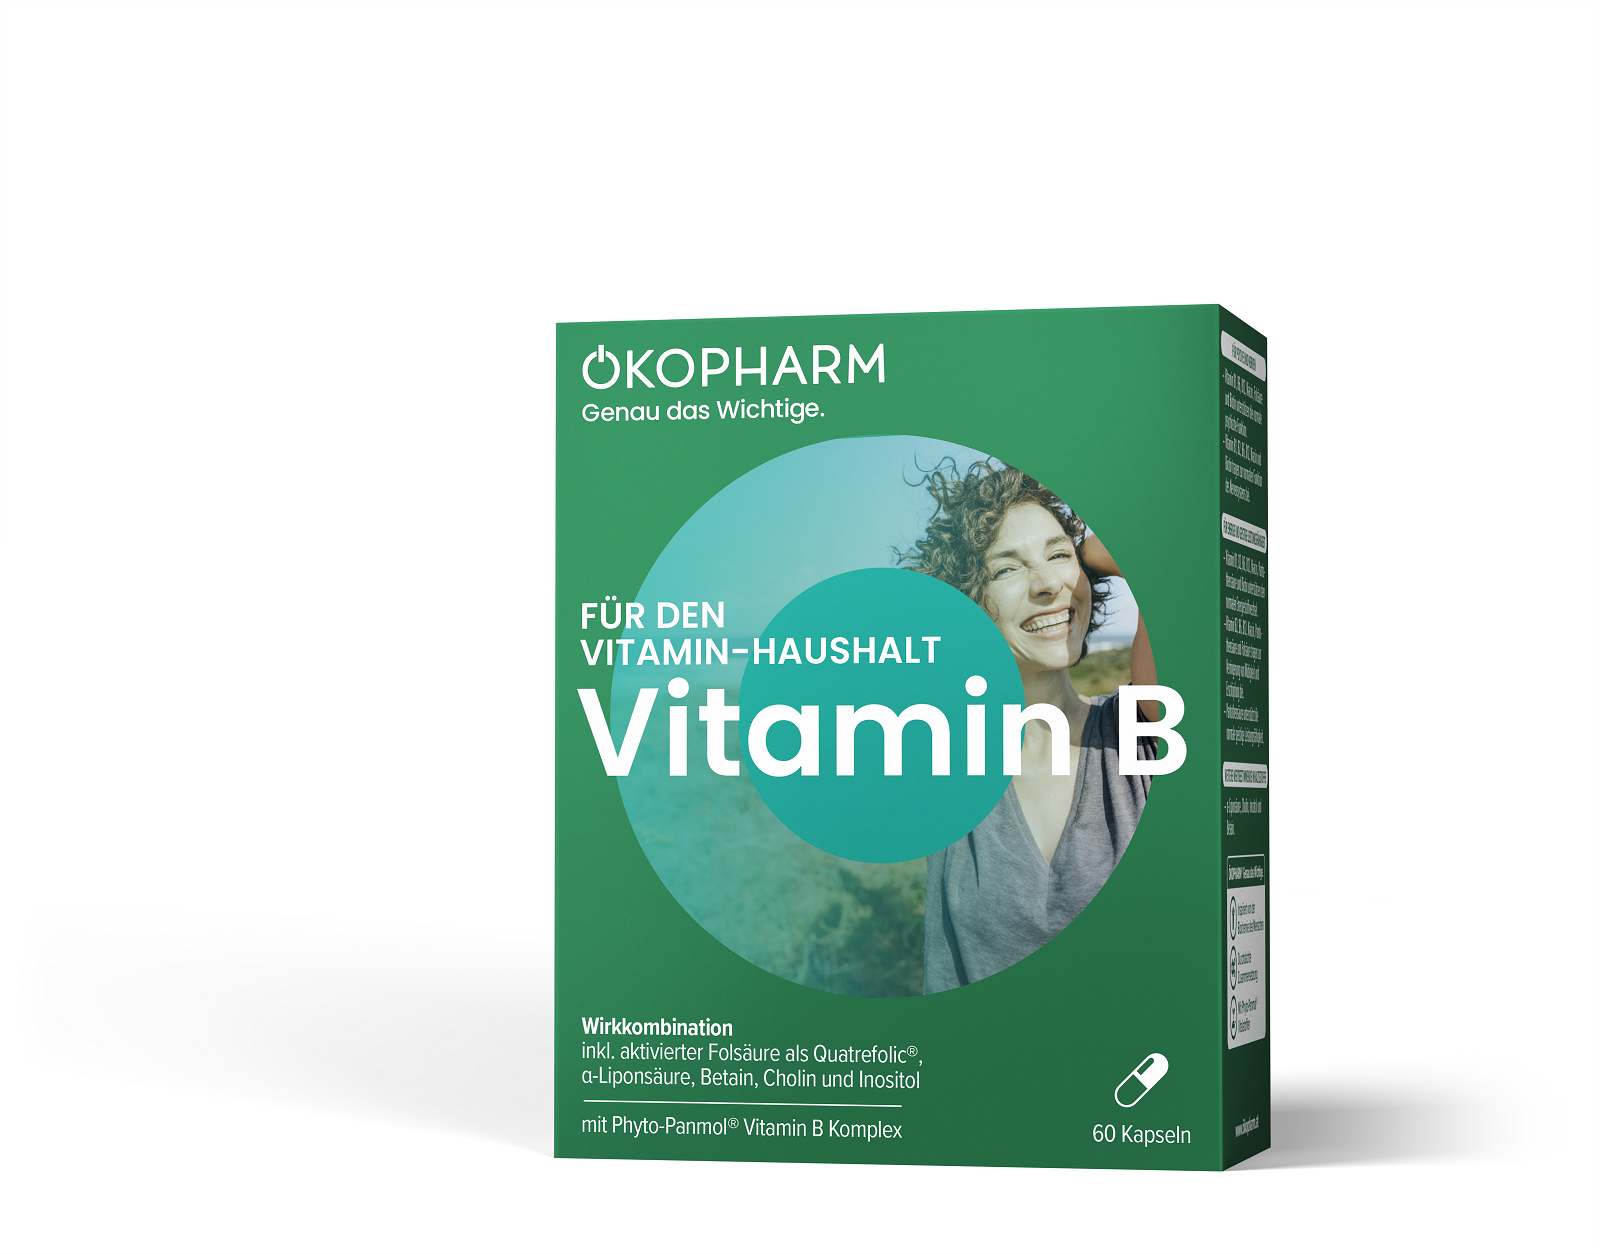 Ökopharm® Wirkkombination für den Vitamin-Haushalt Vitamin B Kapseln 60ST